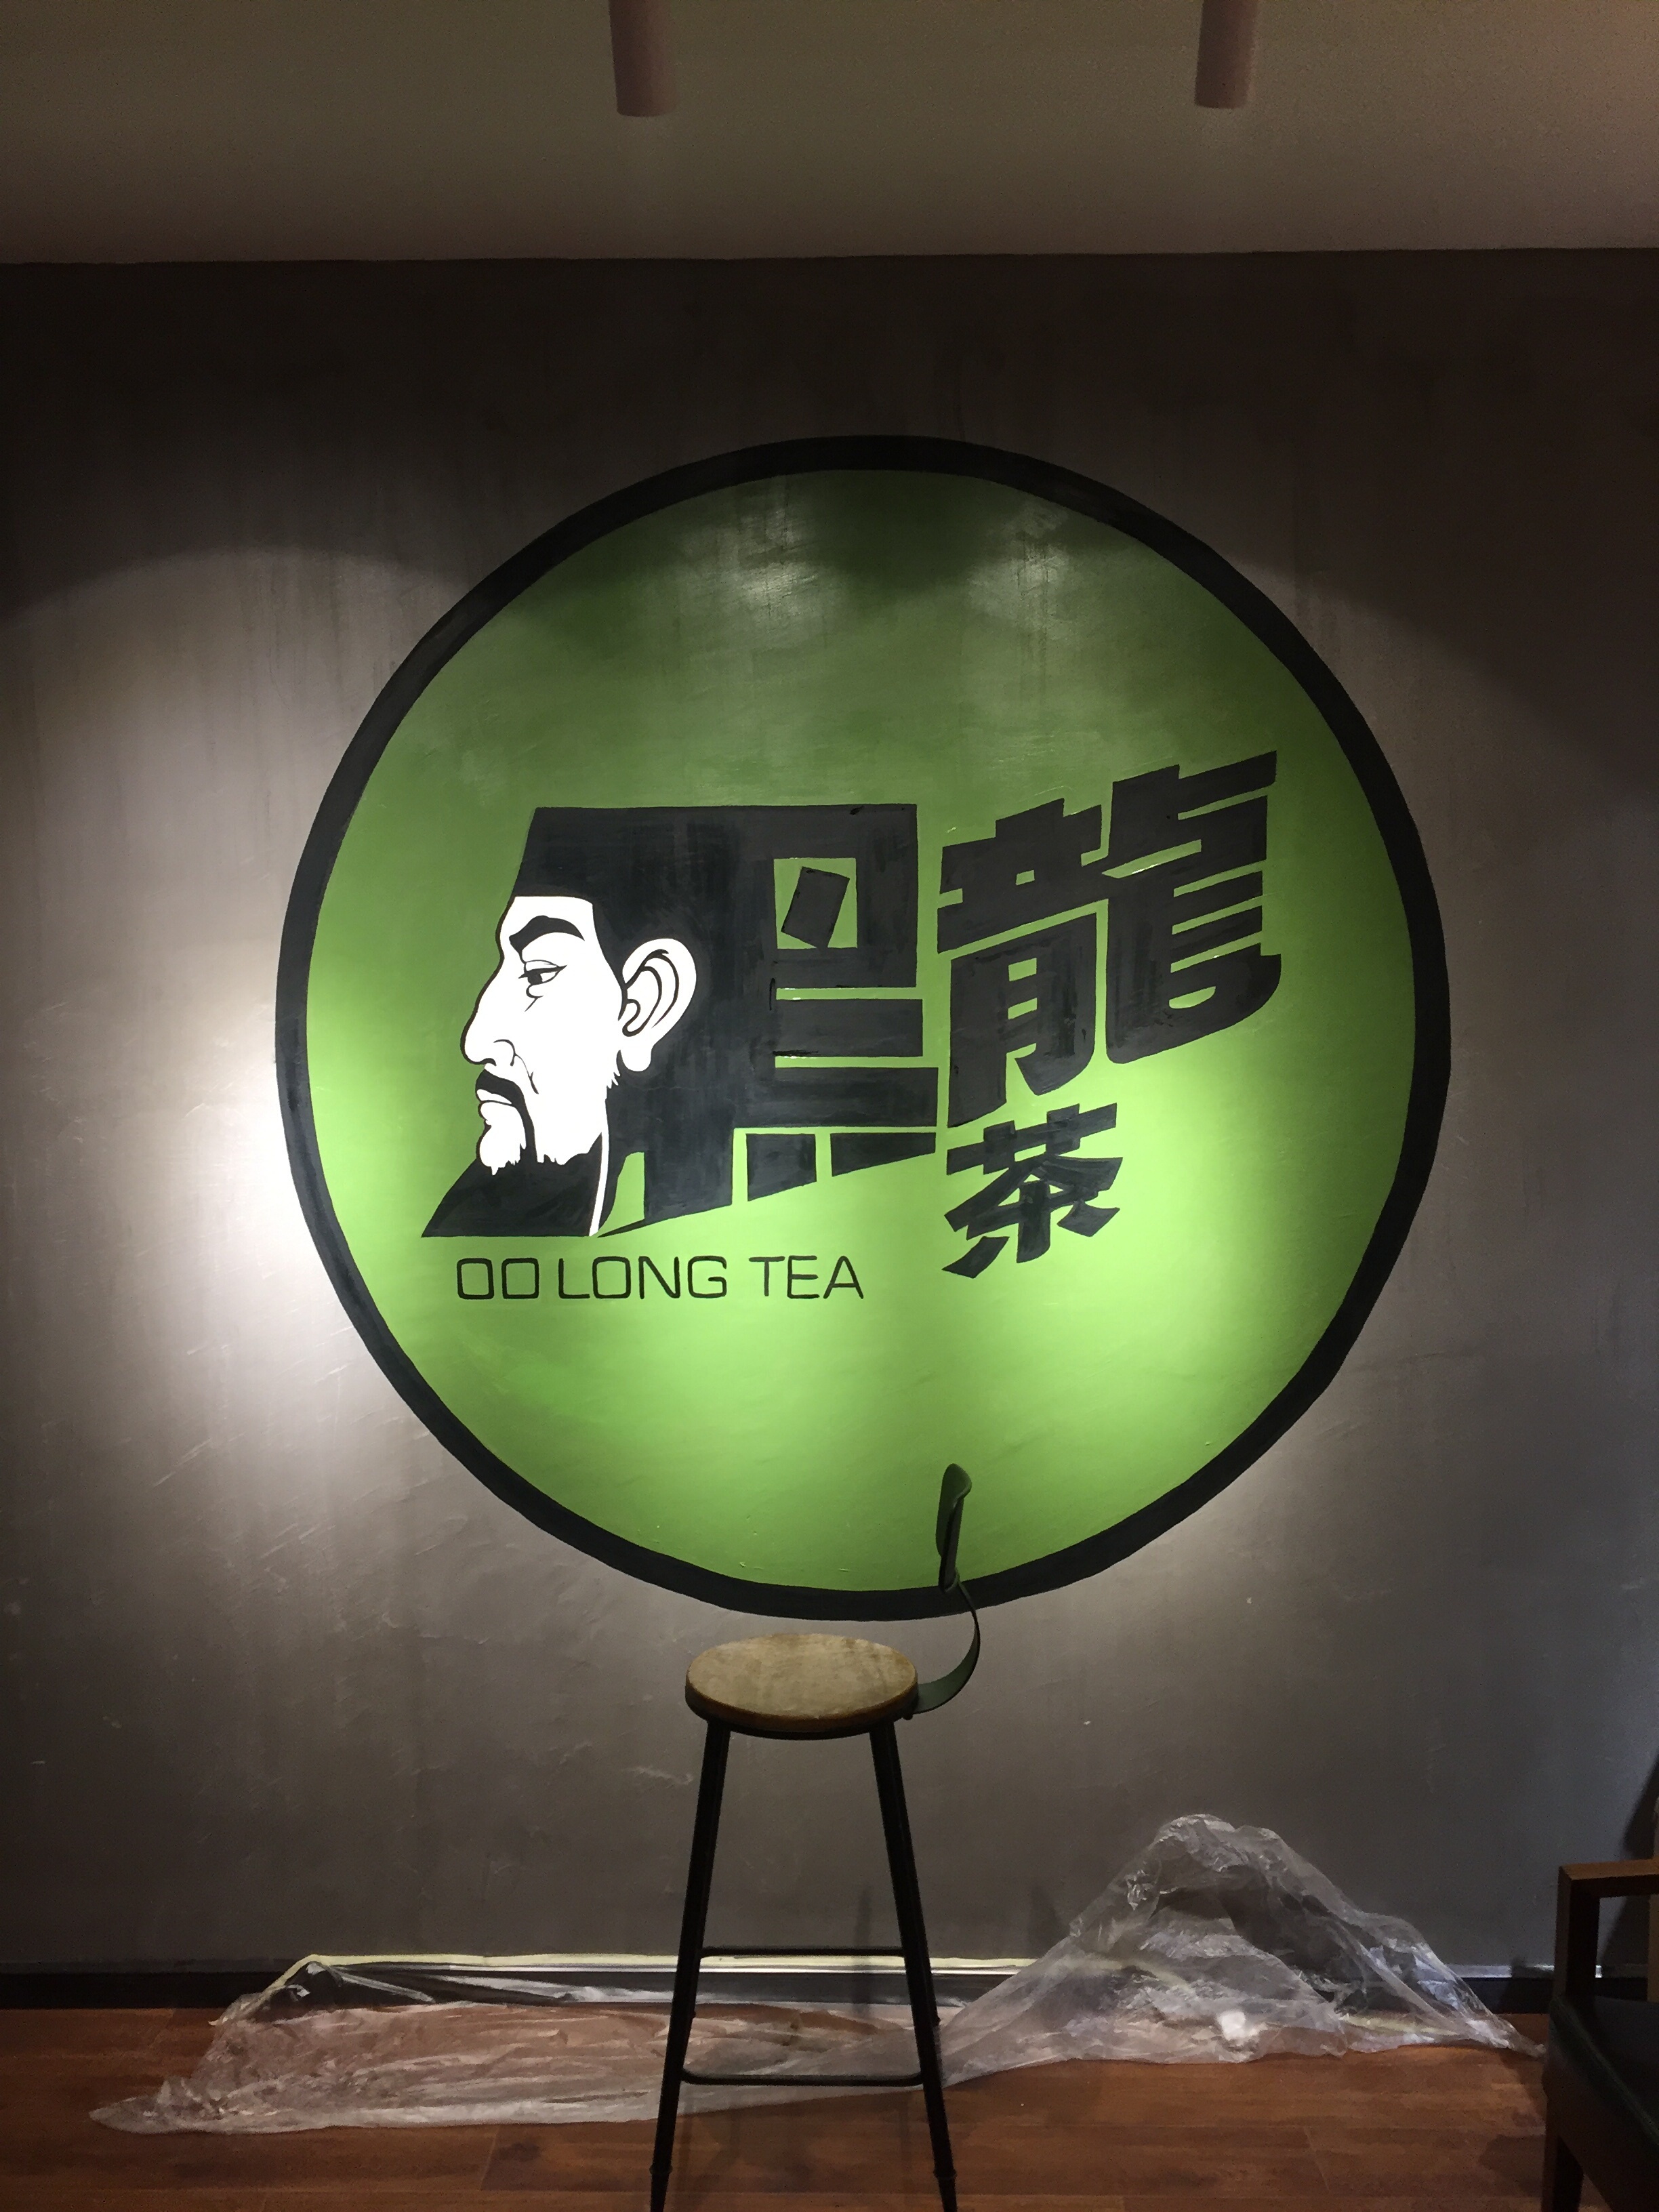 乌龙煎黑龙茶台湾传承手艺坚持使用进口原料